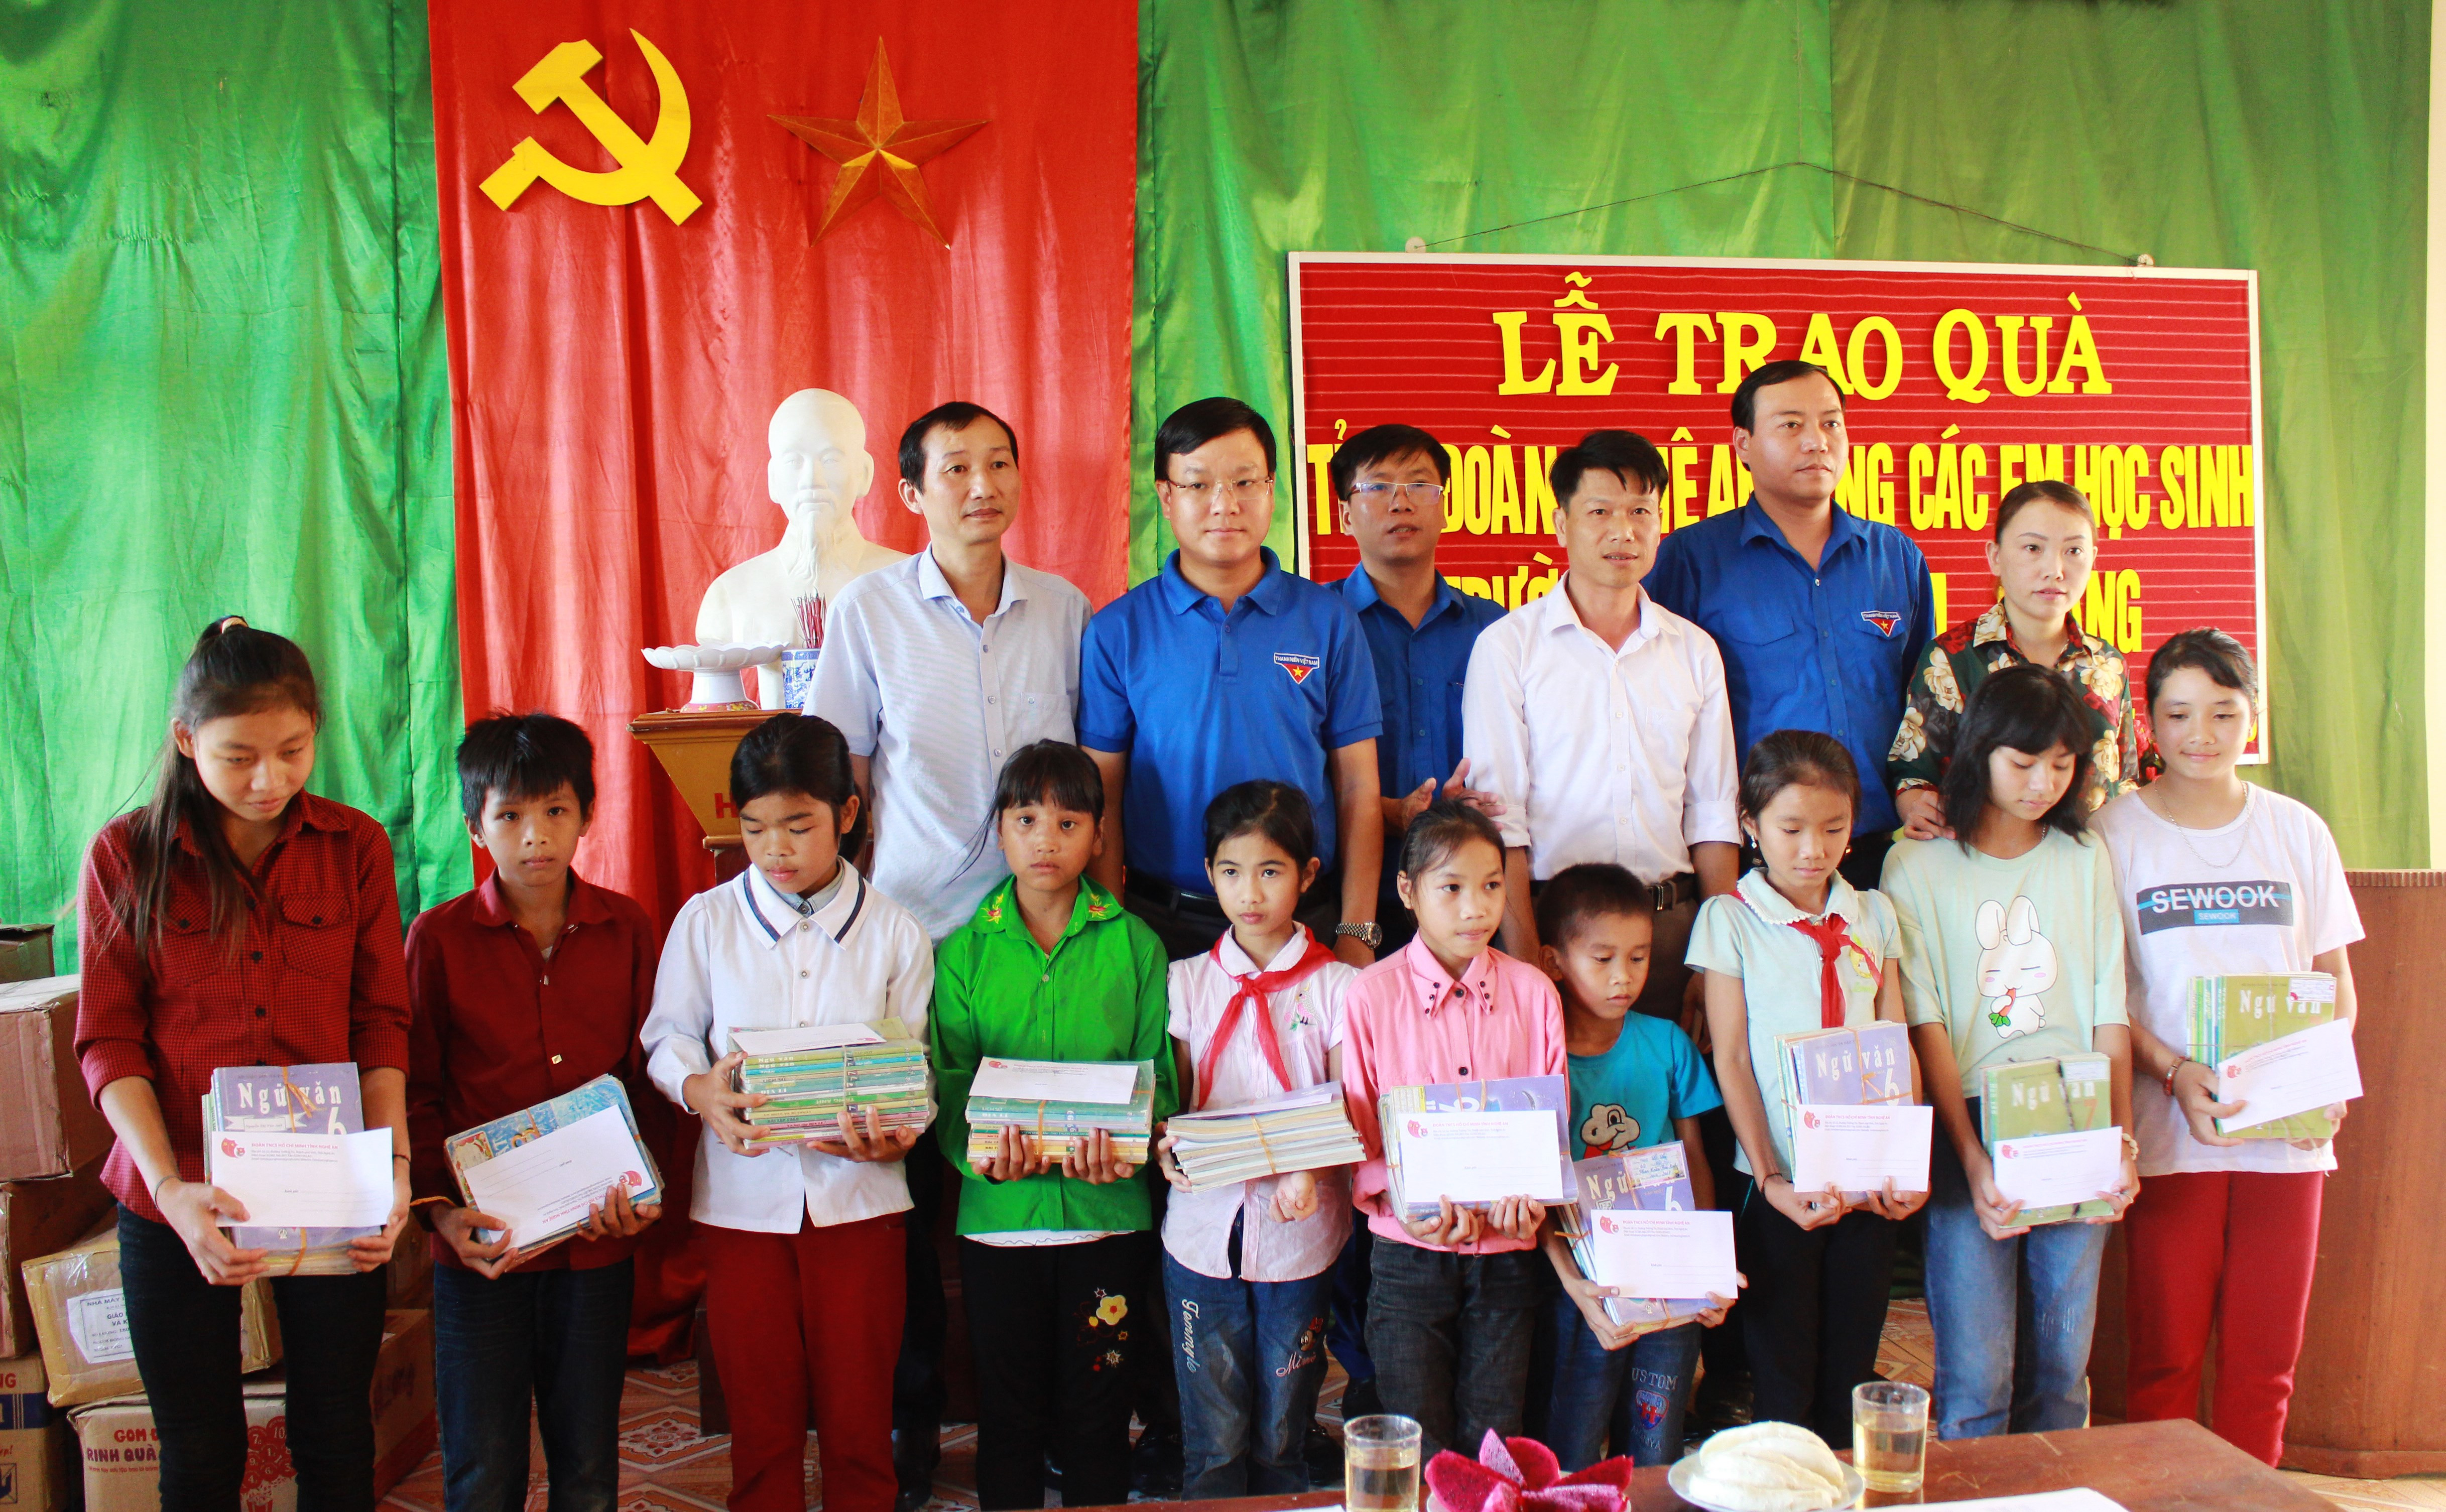 Đoàn đã đến động viên và tặng quà cho học sinh khó khăn bị ảnh hưởng bởi lũ lụt tại trường THCS Tam Quang, Tương Dương. Ảnh: Phương Thúy